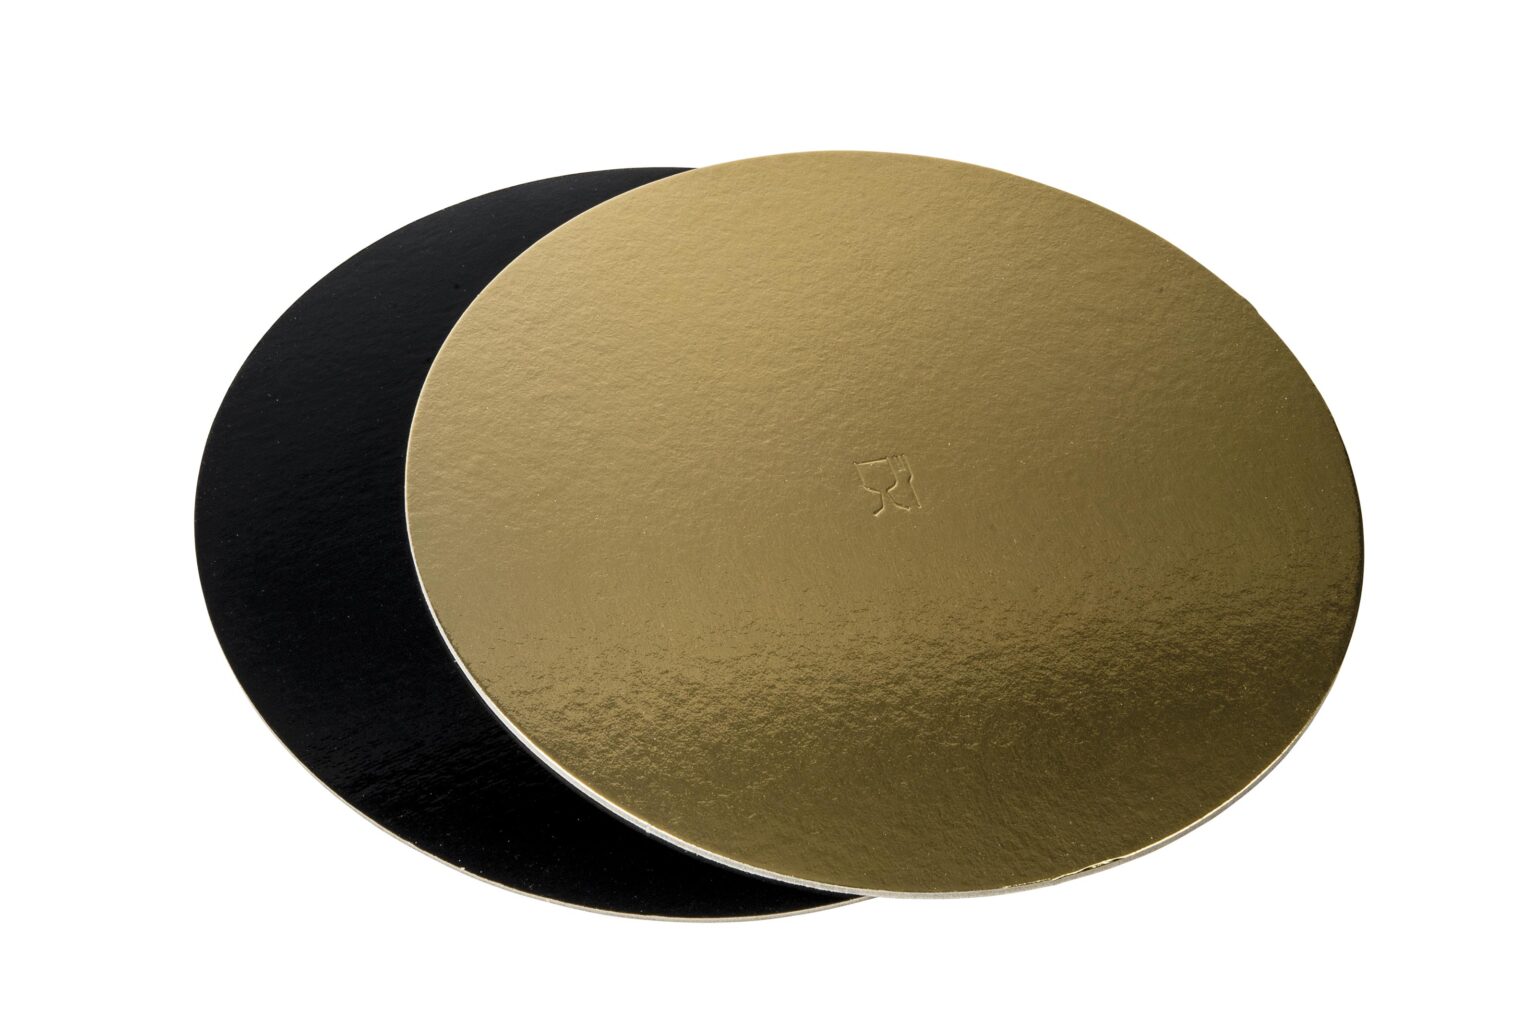 Discuri groase auriu/negru - Discuri groase auriu/negru 2400 gr OE36cm - 10 buc/set